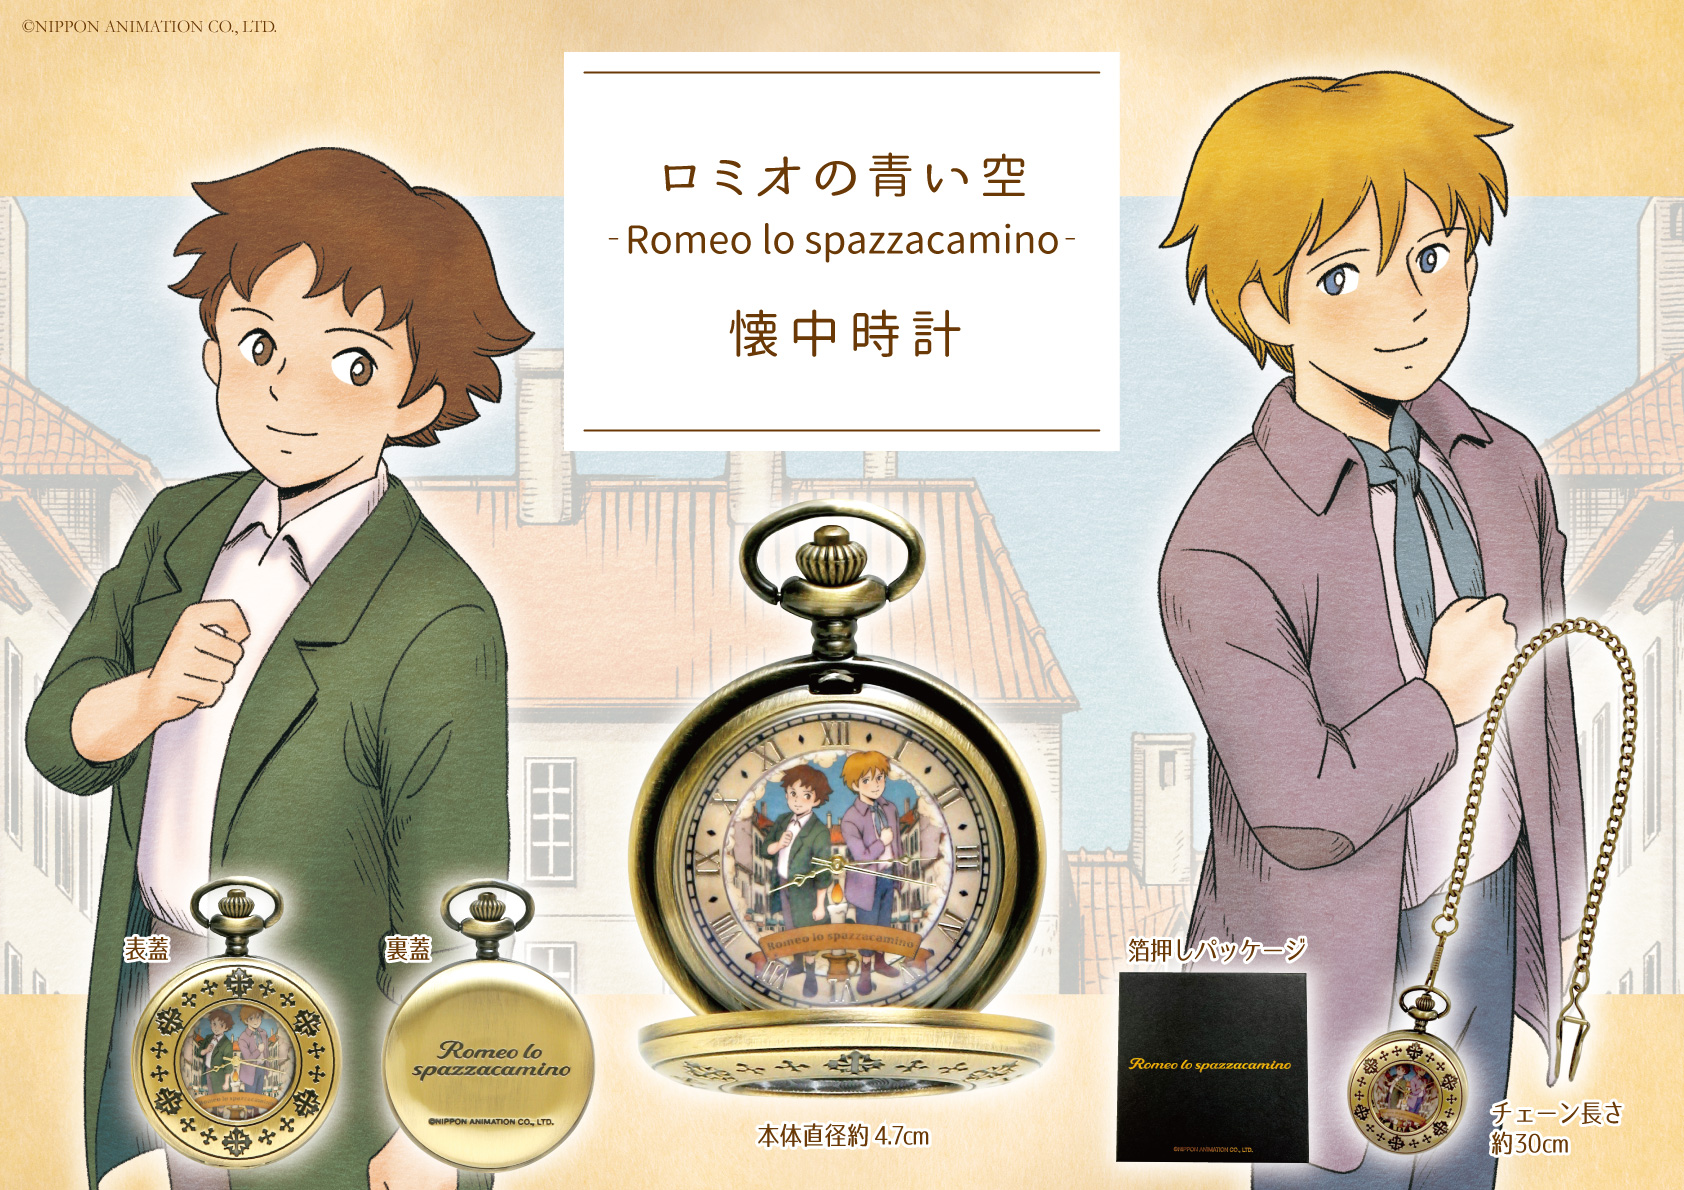 ロミオの青い空 ーromeo Lo Spazzacaminoー 懐中時計を発売中 株式会社メジャーのプレスリリース